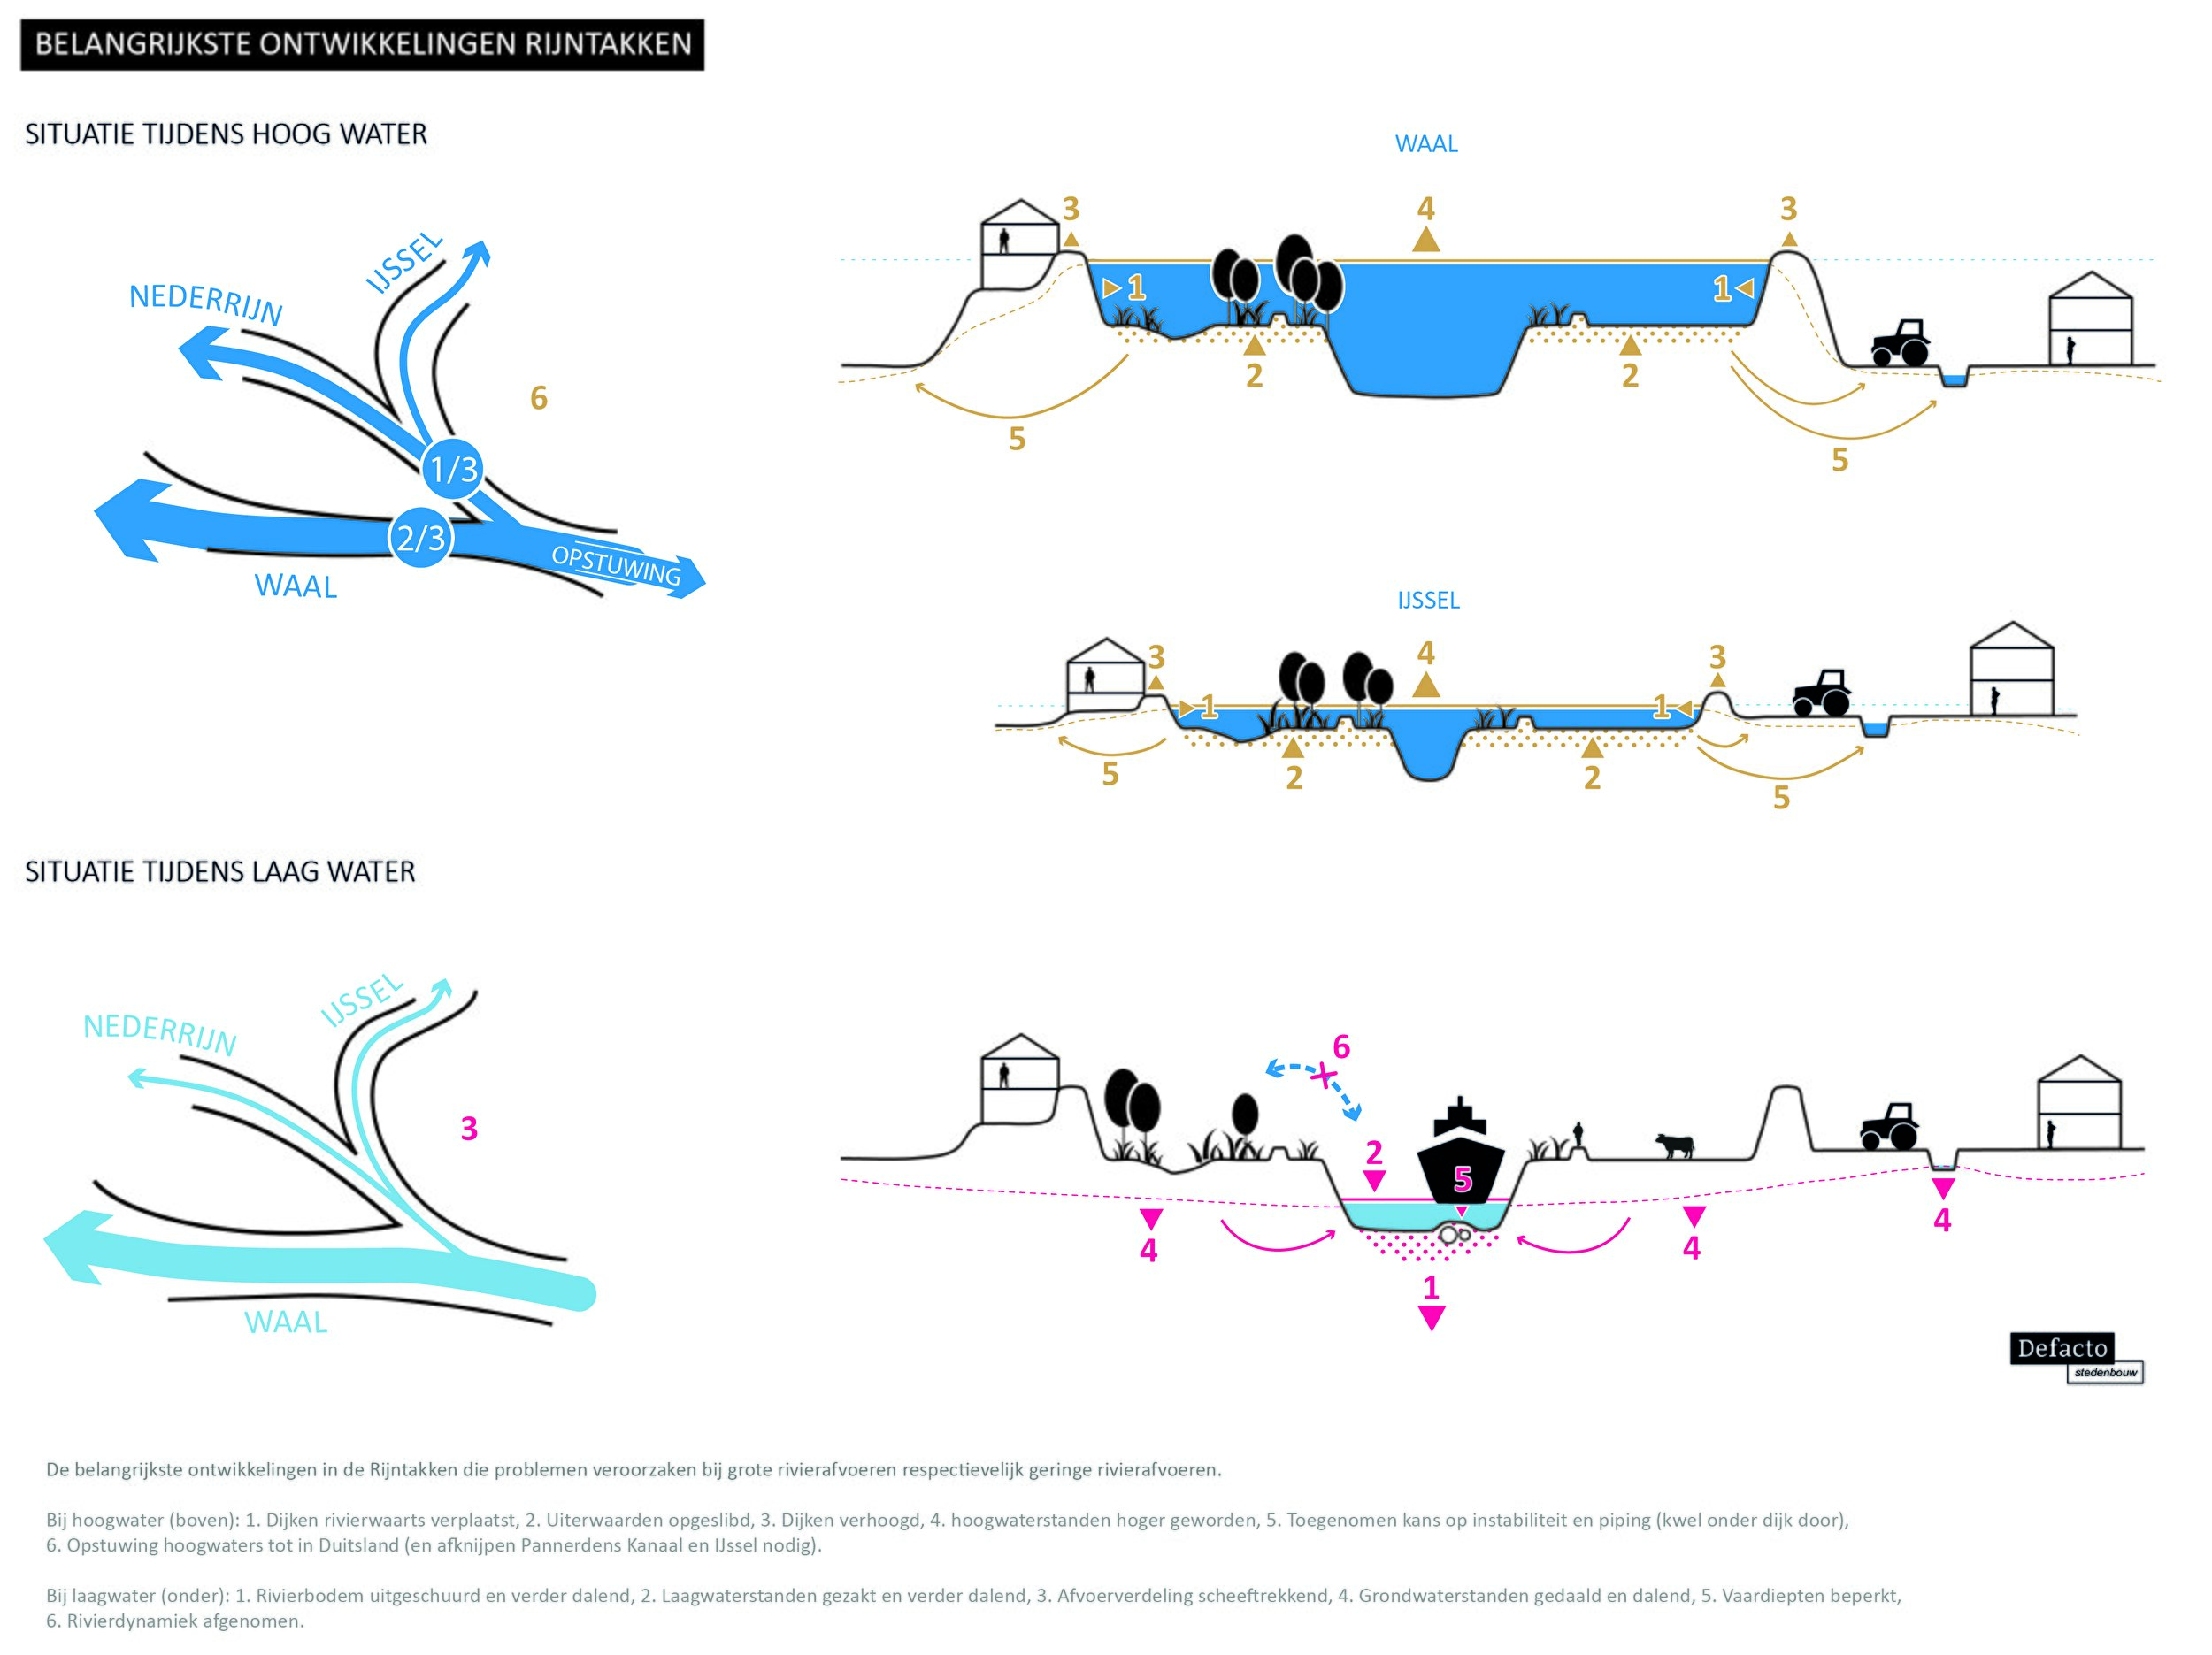 De ontwikkelingen van de Rijntakken in kaart gebracht, zowel bij hoog- als bij laagwater (bron: Defacto)